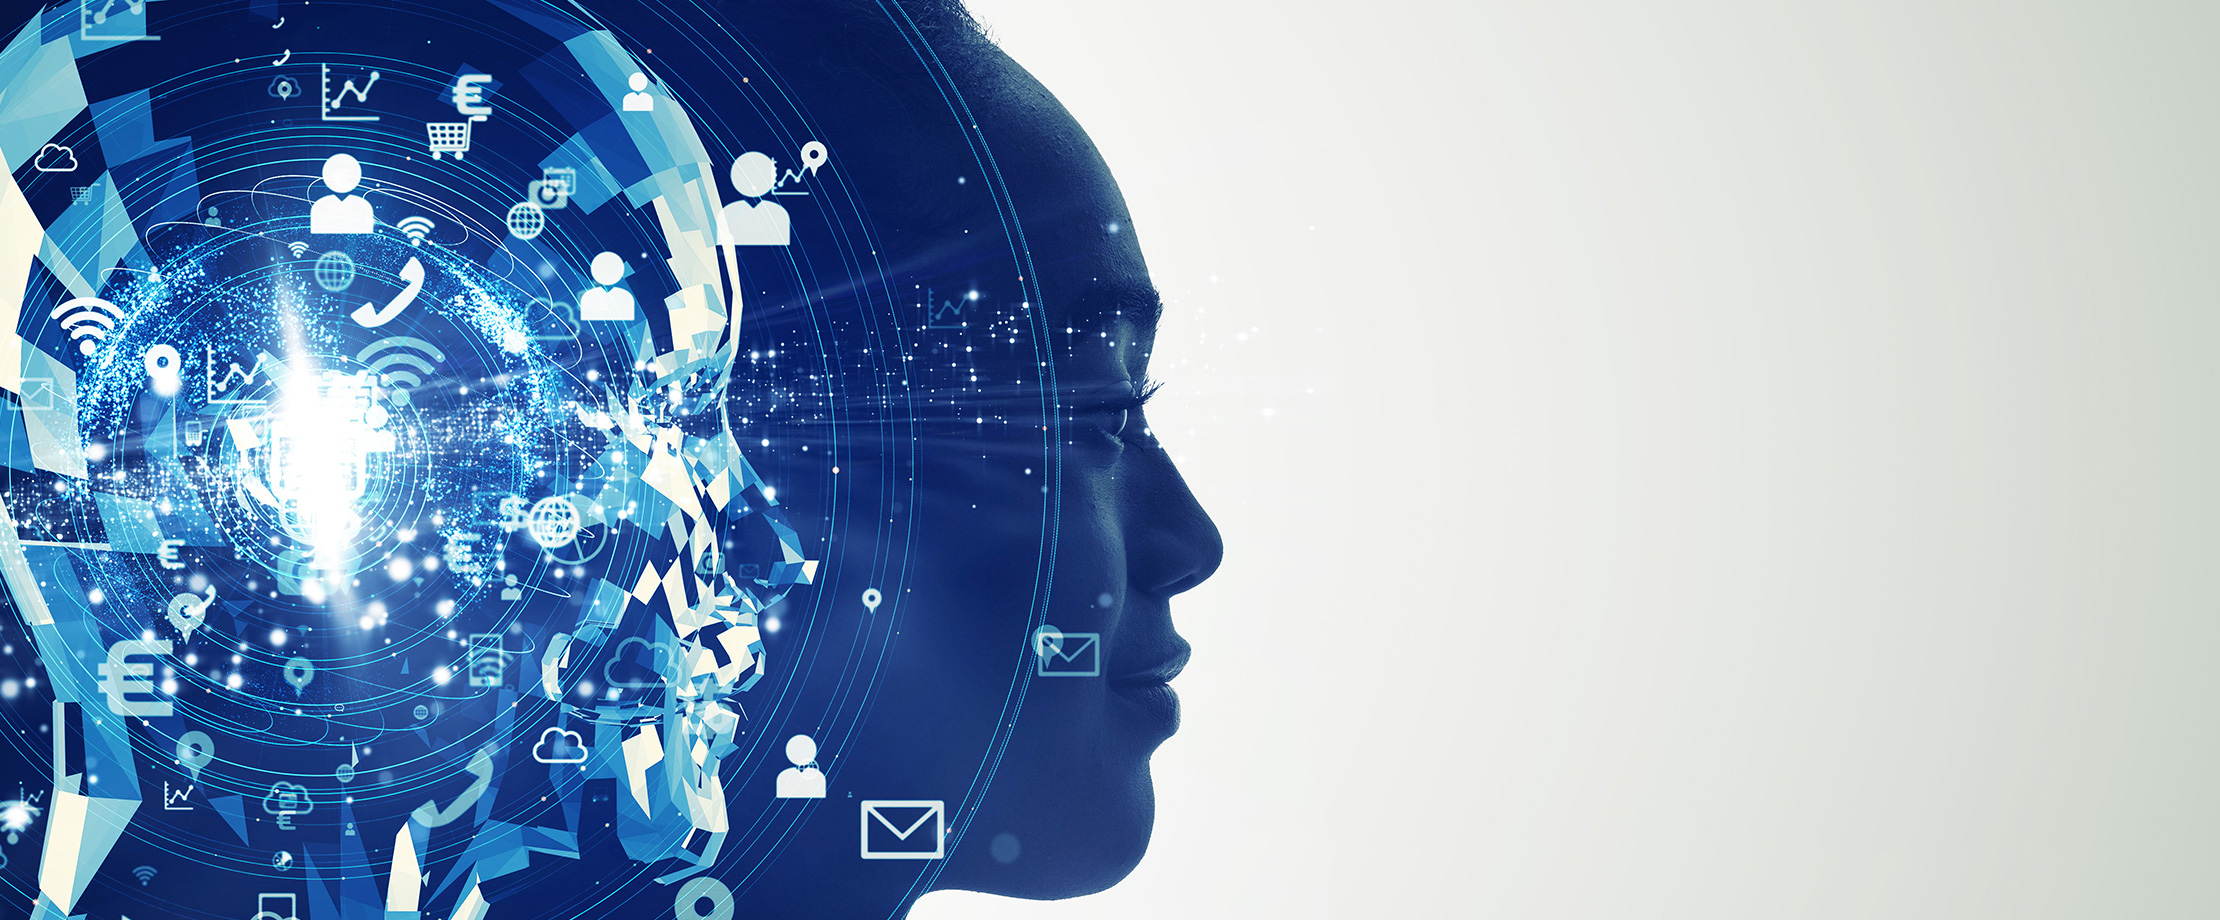 Das Seitenprofil einer Frau ist in Blautönen vor einem weiß-grauen Hintergrund abgebildet. Links versetzt werden ihre Kopfumrisse durch schwebende blaue Platten nachgeformt, was künstliche Intelligenz darstellen soll.